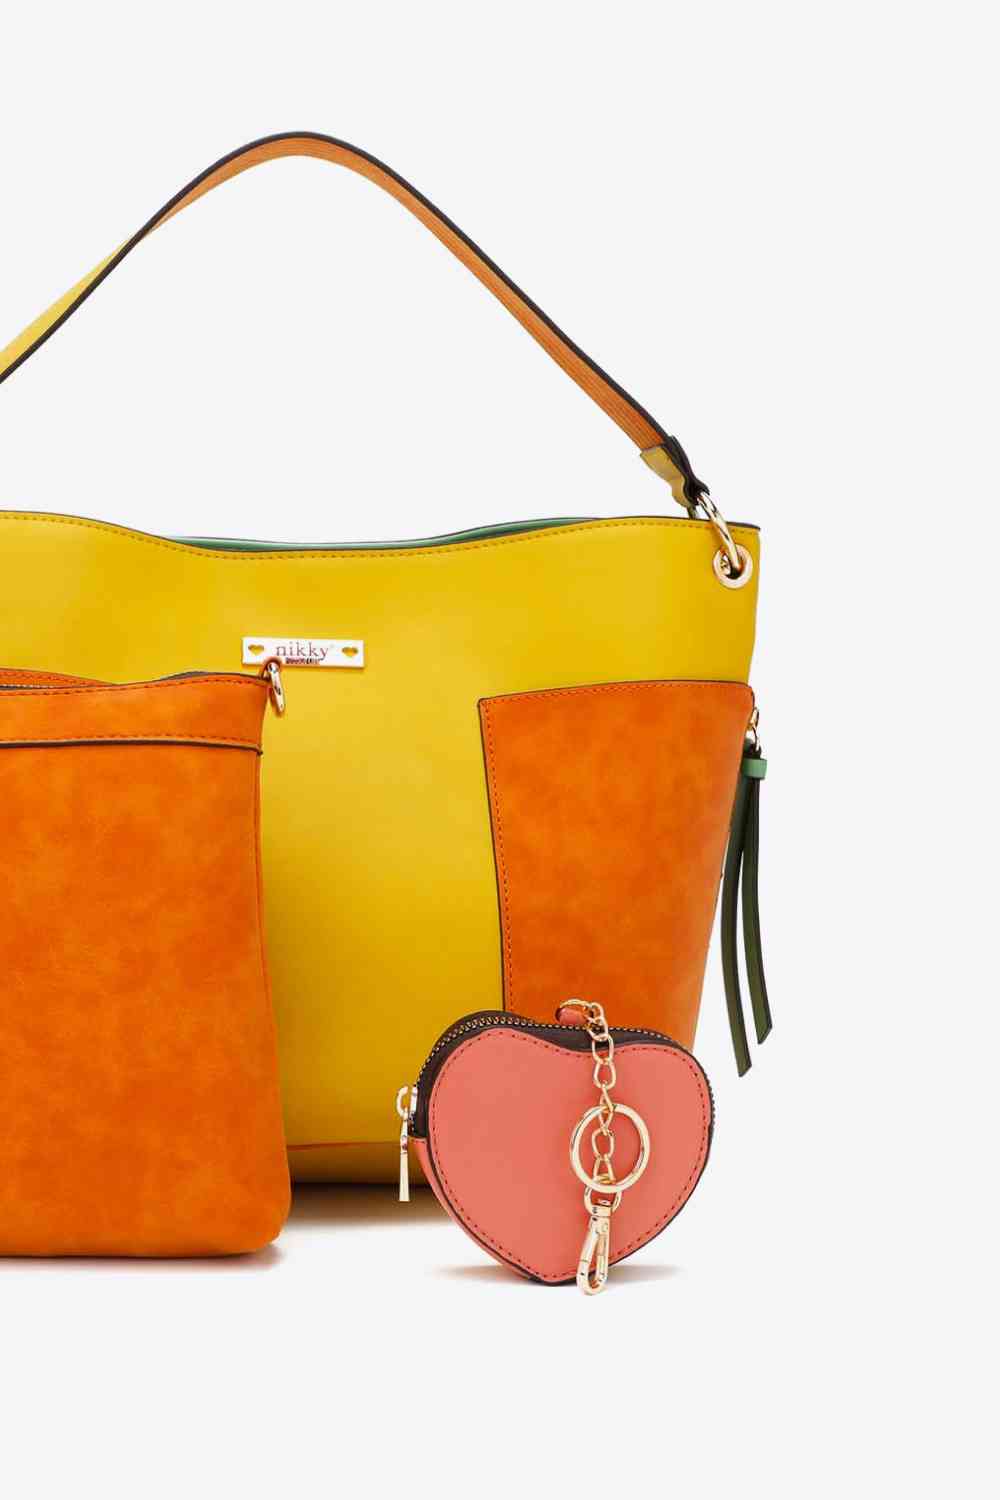 Nicole Lee USA Sweetheart Handbag Set Orange No 3